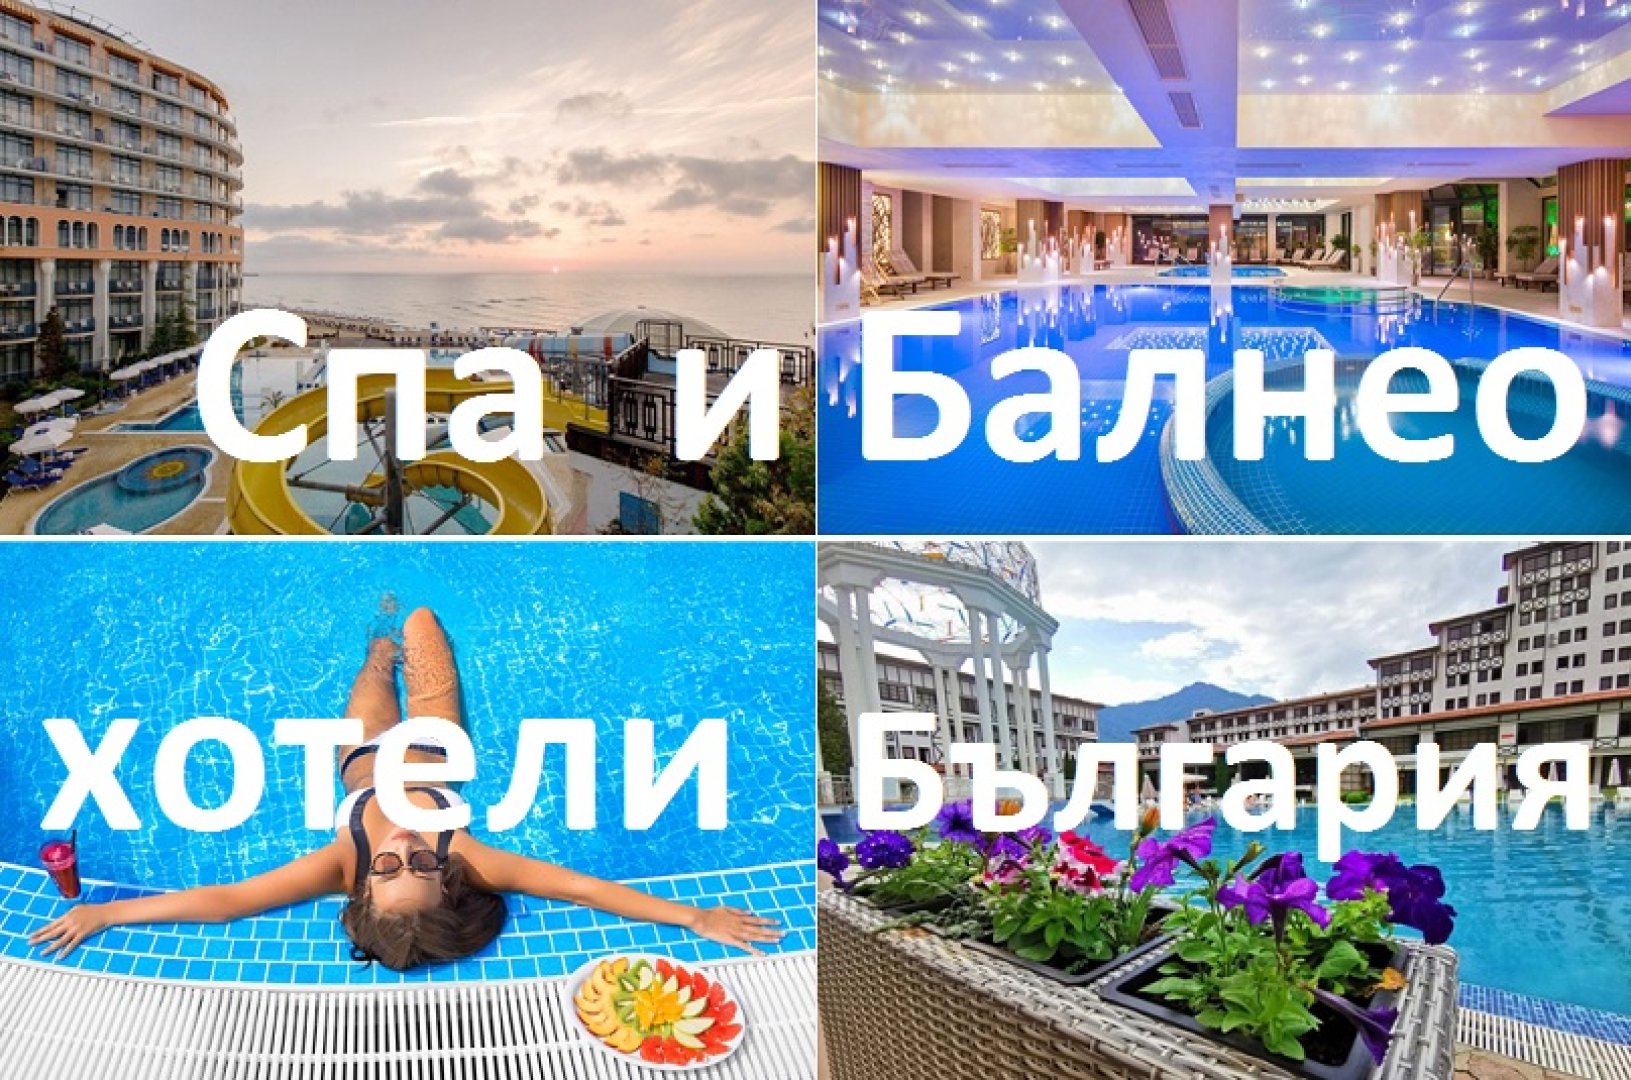 Спа и балнео хотели България